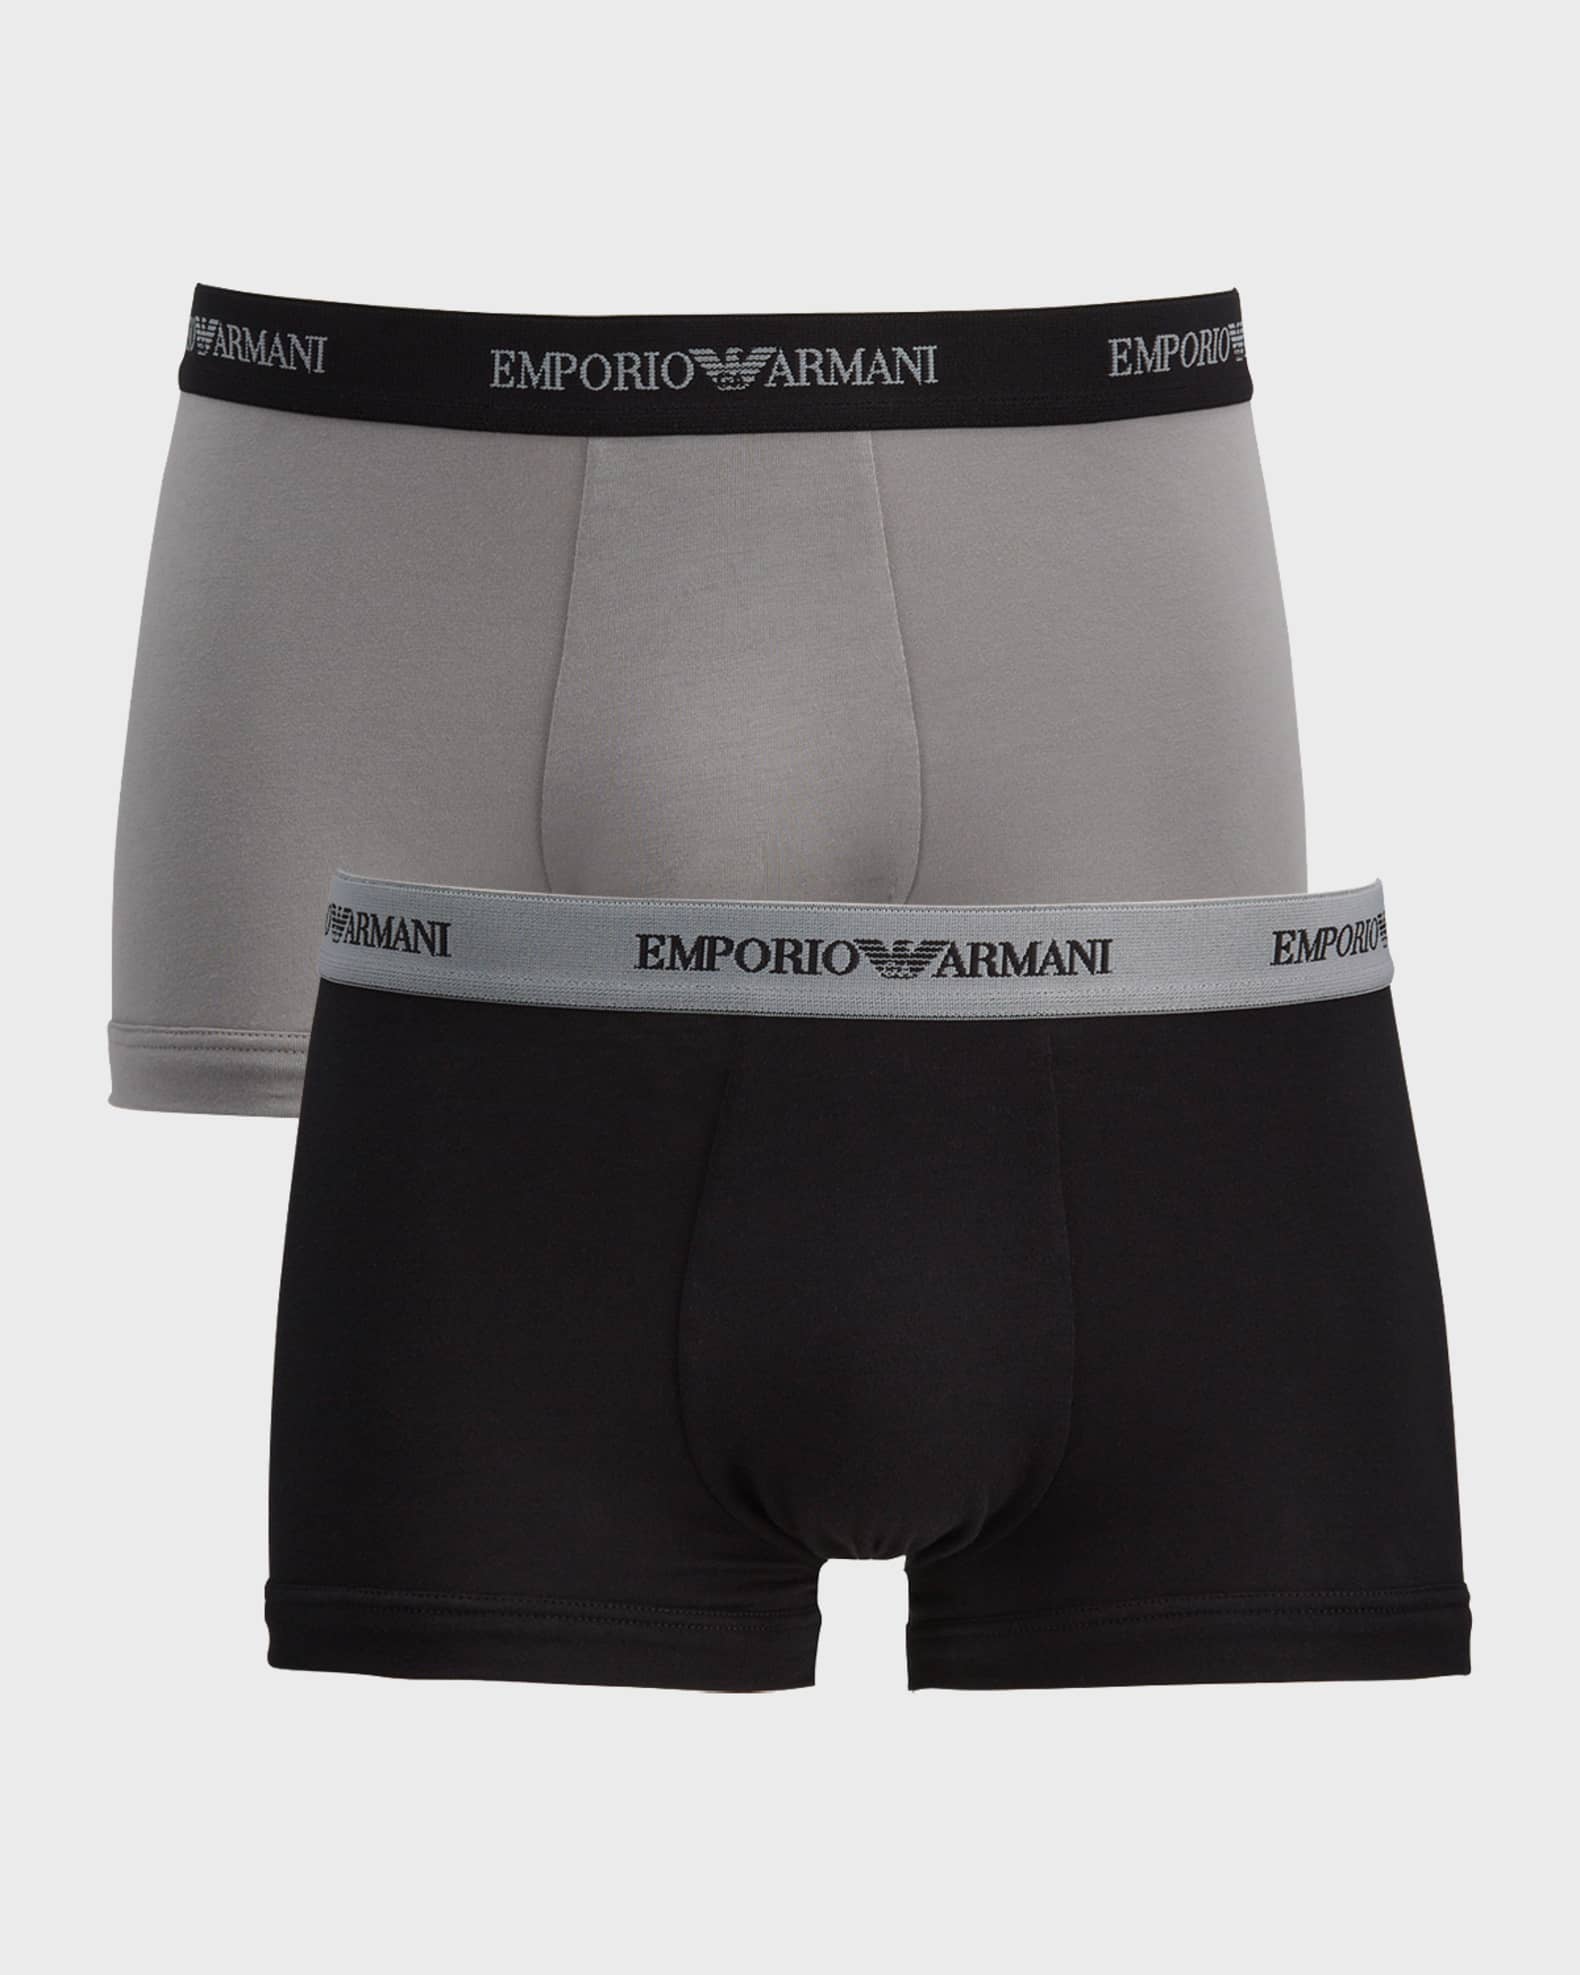 Emporio Armani Men's 2-Pack Stretch Cotton Boxer Briefs